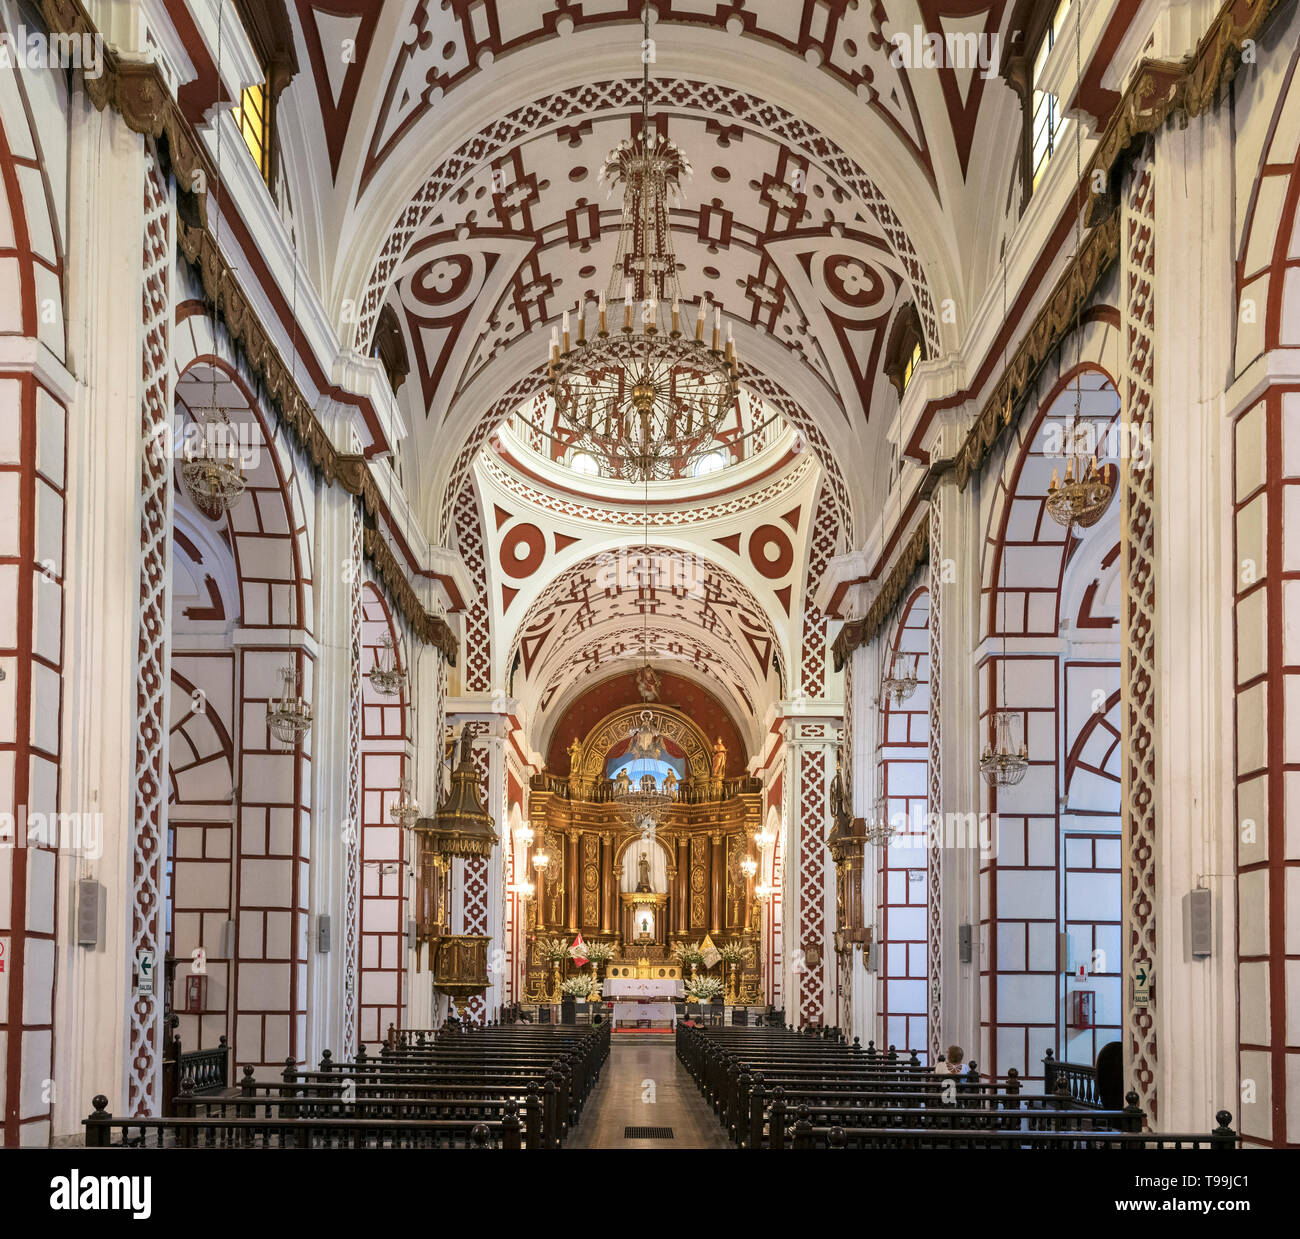 Die Kirche das Monasterio de San Francisco (Hl. Franziskus Kloster), Centro Historico (historisches Zentrum), Lima, Peru, Südamerika Stockfoto